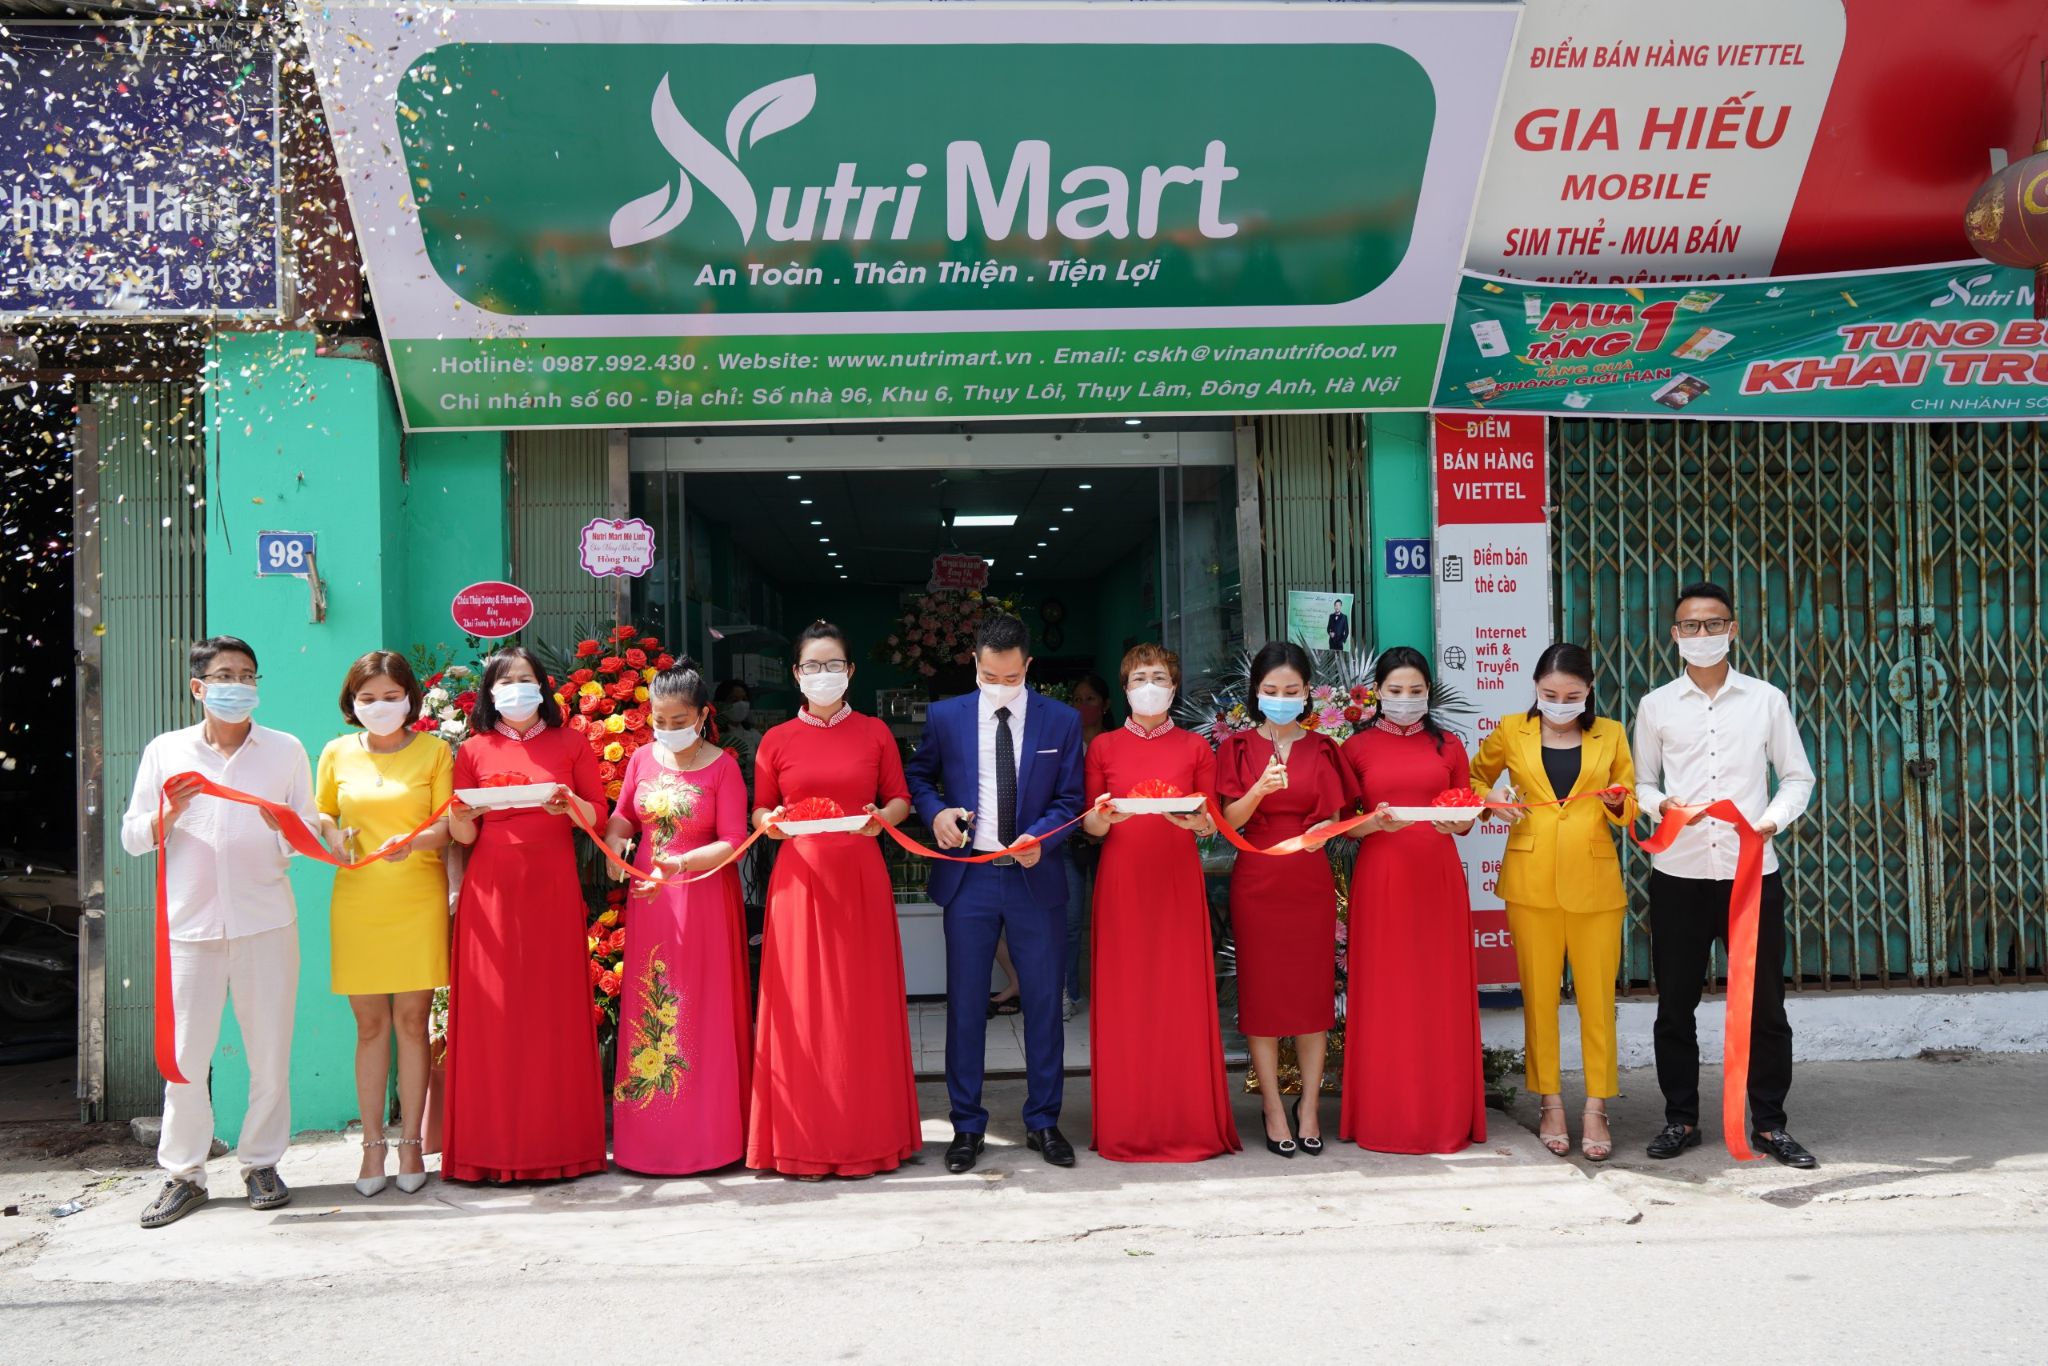 Bùng nổ khai trương Nutri Mart, khách hàng nô nức đi “săn” hàng Việt giá tốt